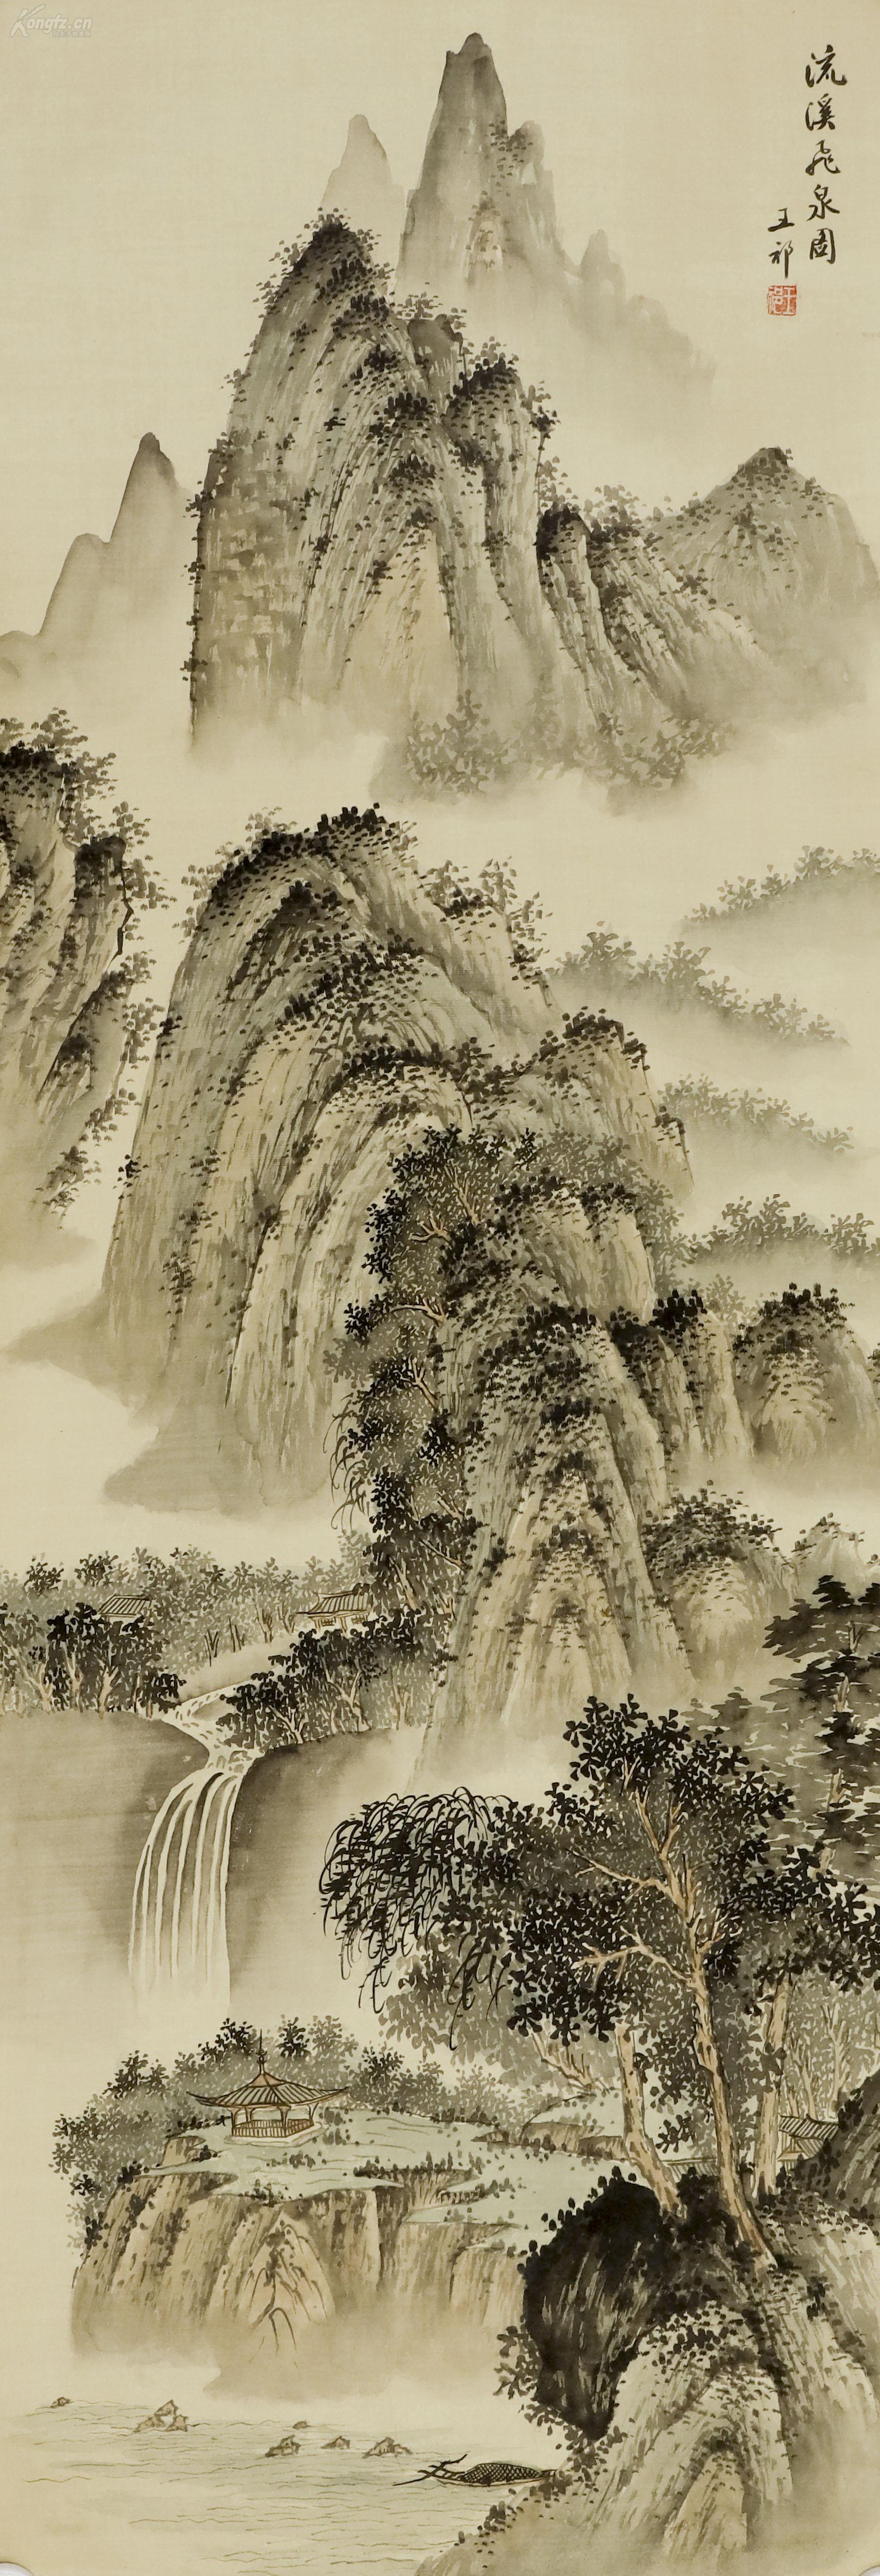 文革时期出口创汇国画:仿清·王祁 山水画作品《流溪飞泉图》一幅